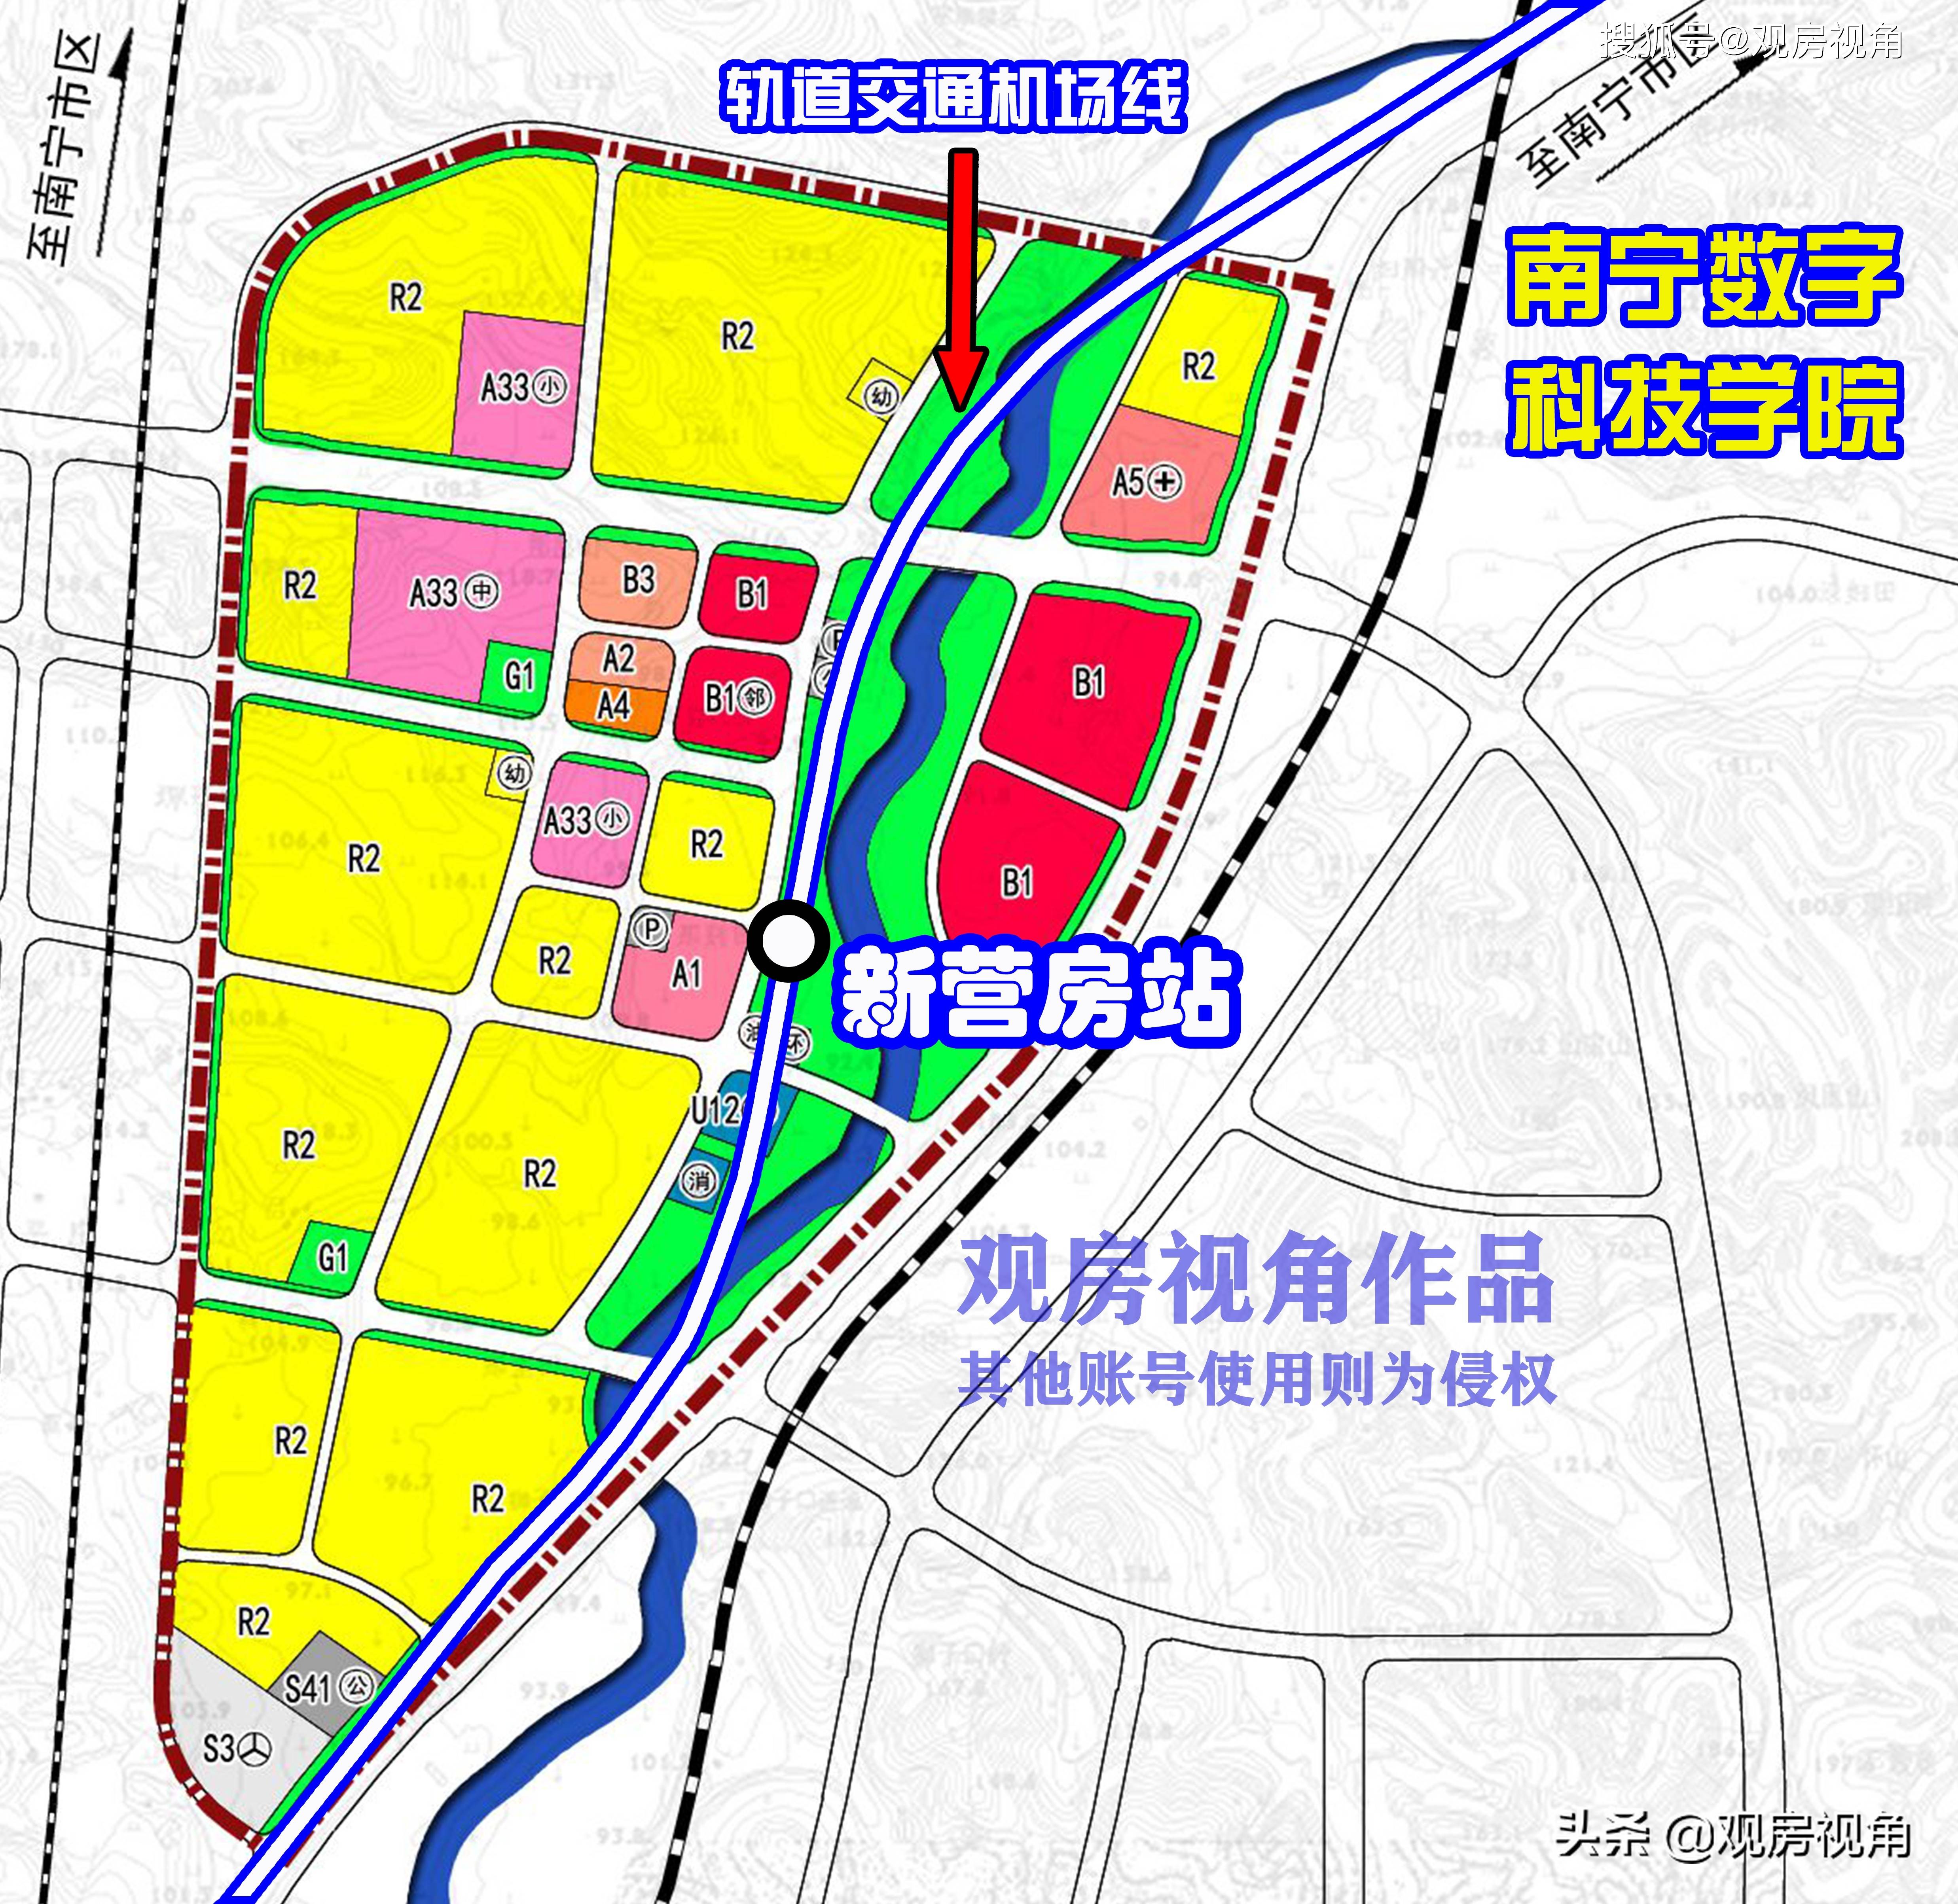 吴圩镇控规,卫星地图, 新营房站规划位置位于:三源色南宁试驾基地以西